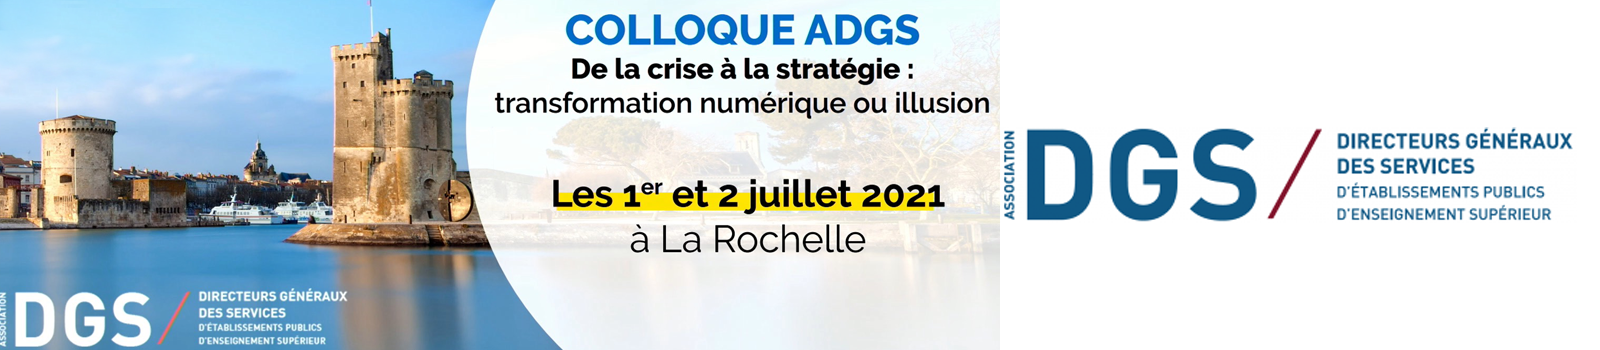 Colloque Annuel des DGS 1er & 2 juillet 2021 - La Rochelle